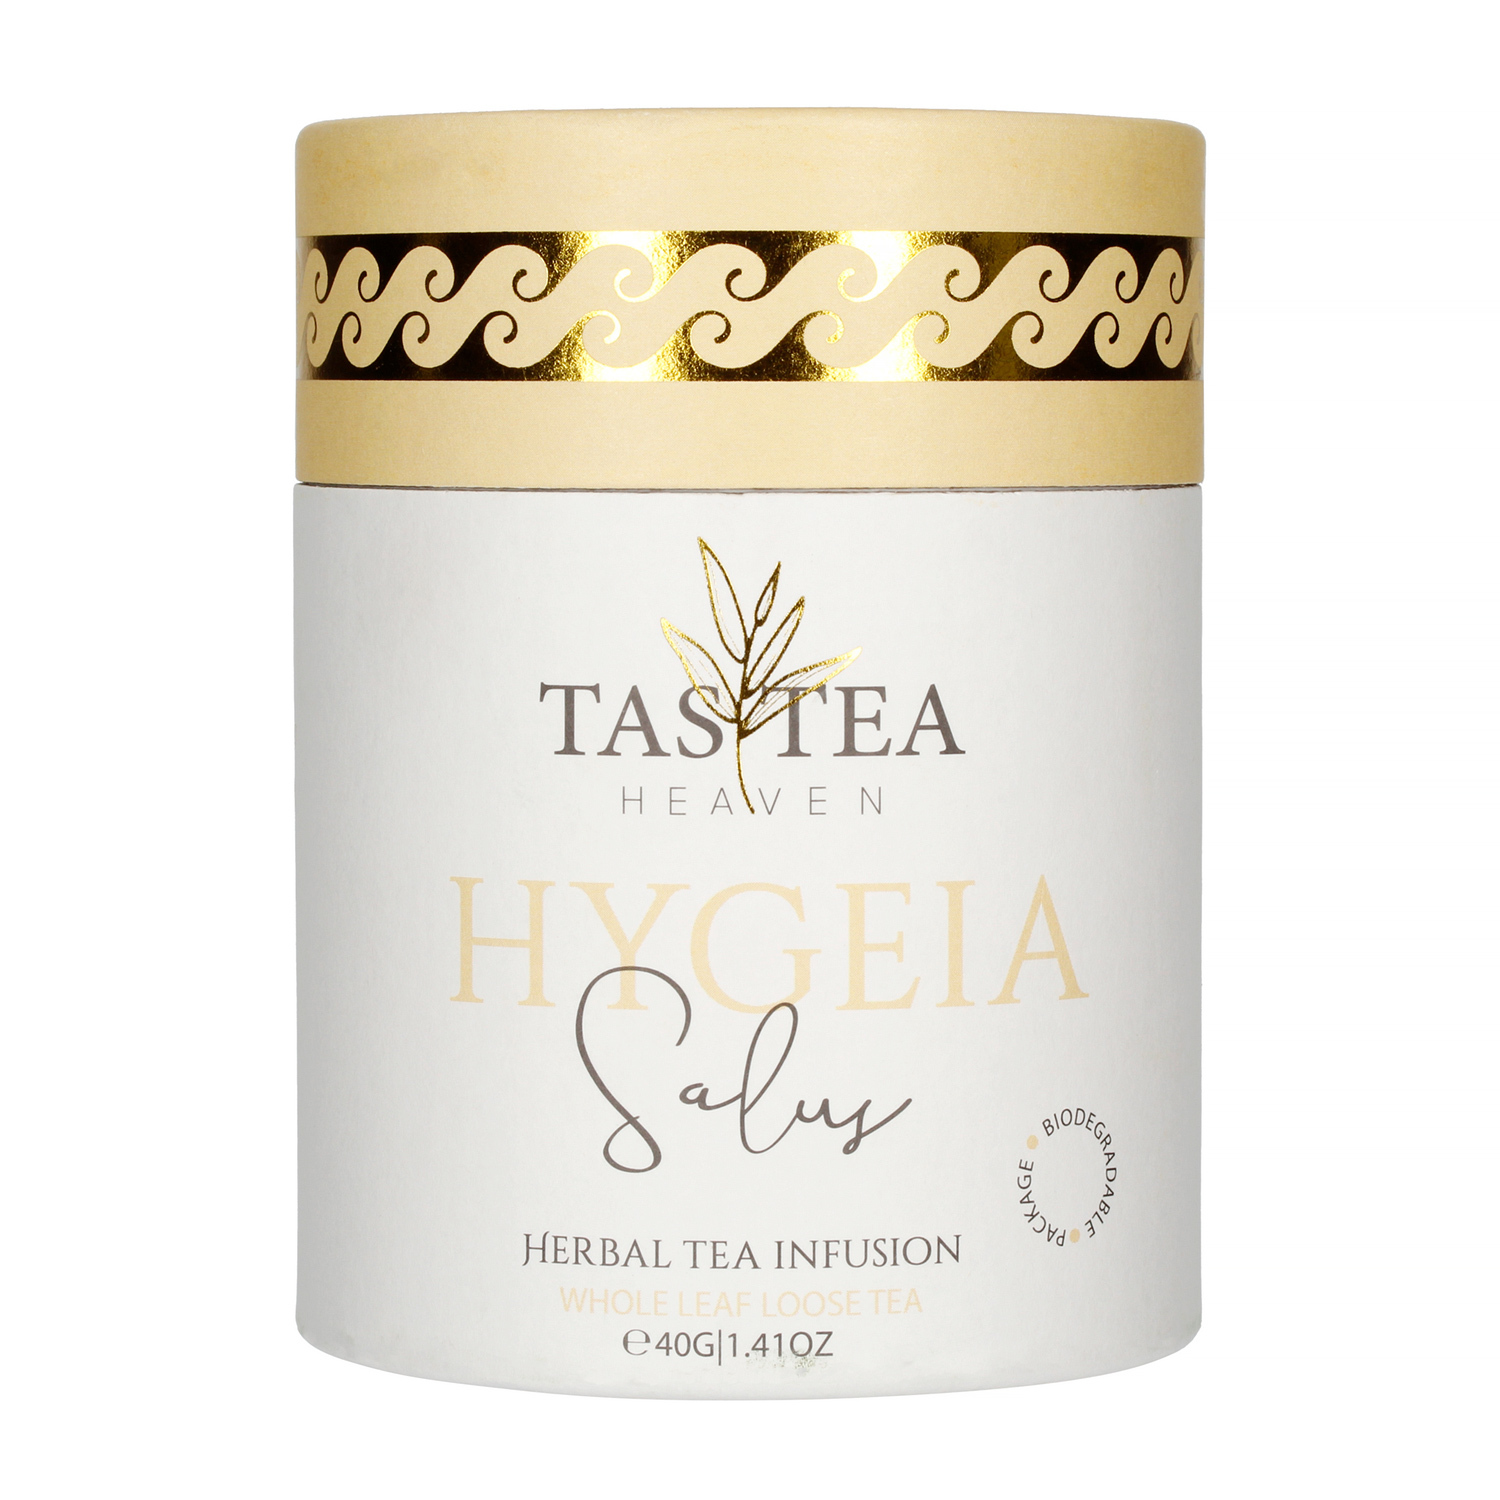 Tastea Heaven - Hygeia - Loose tea 40g